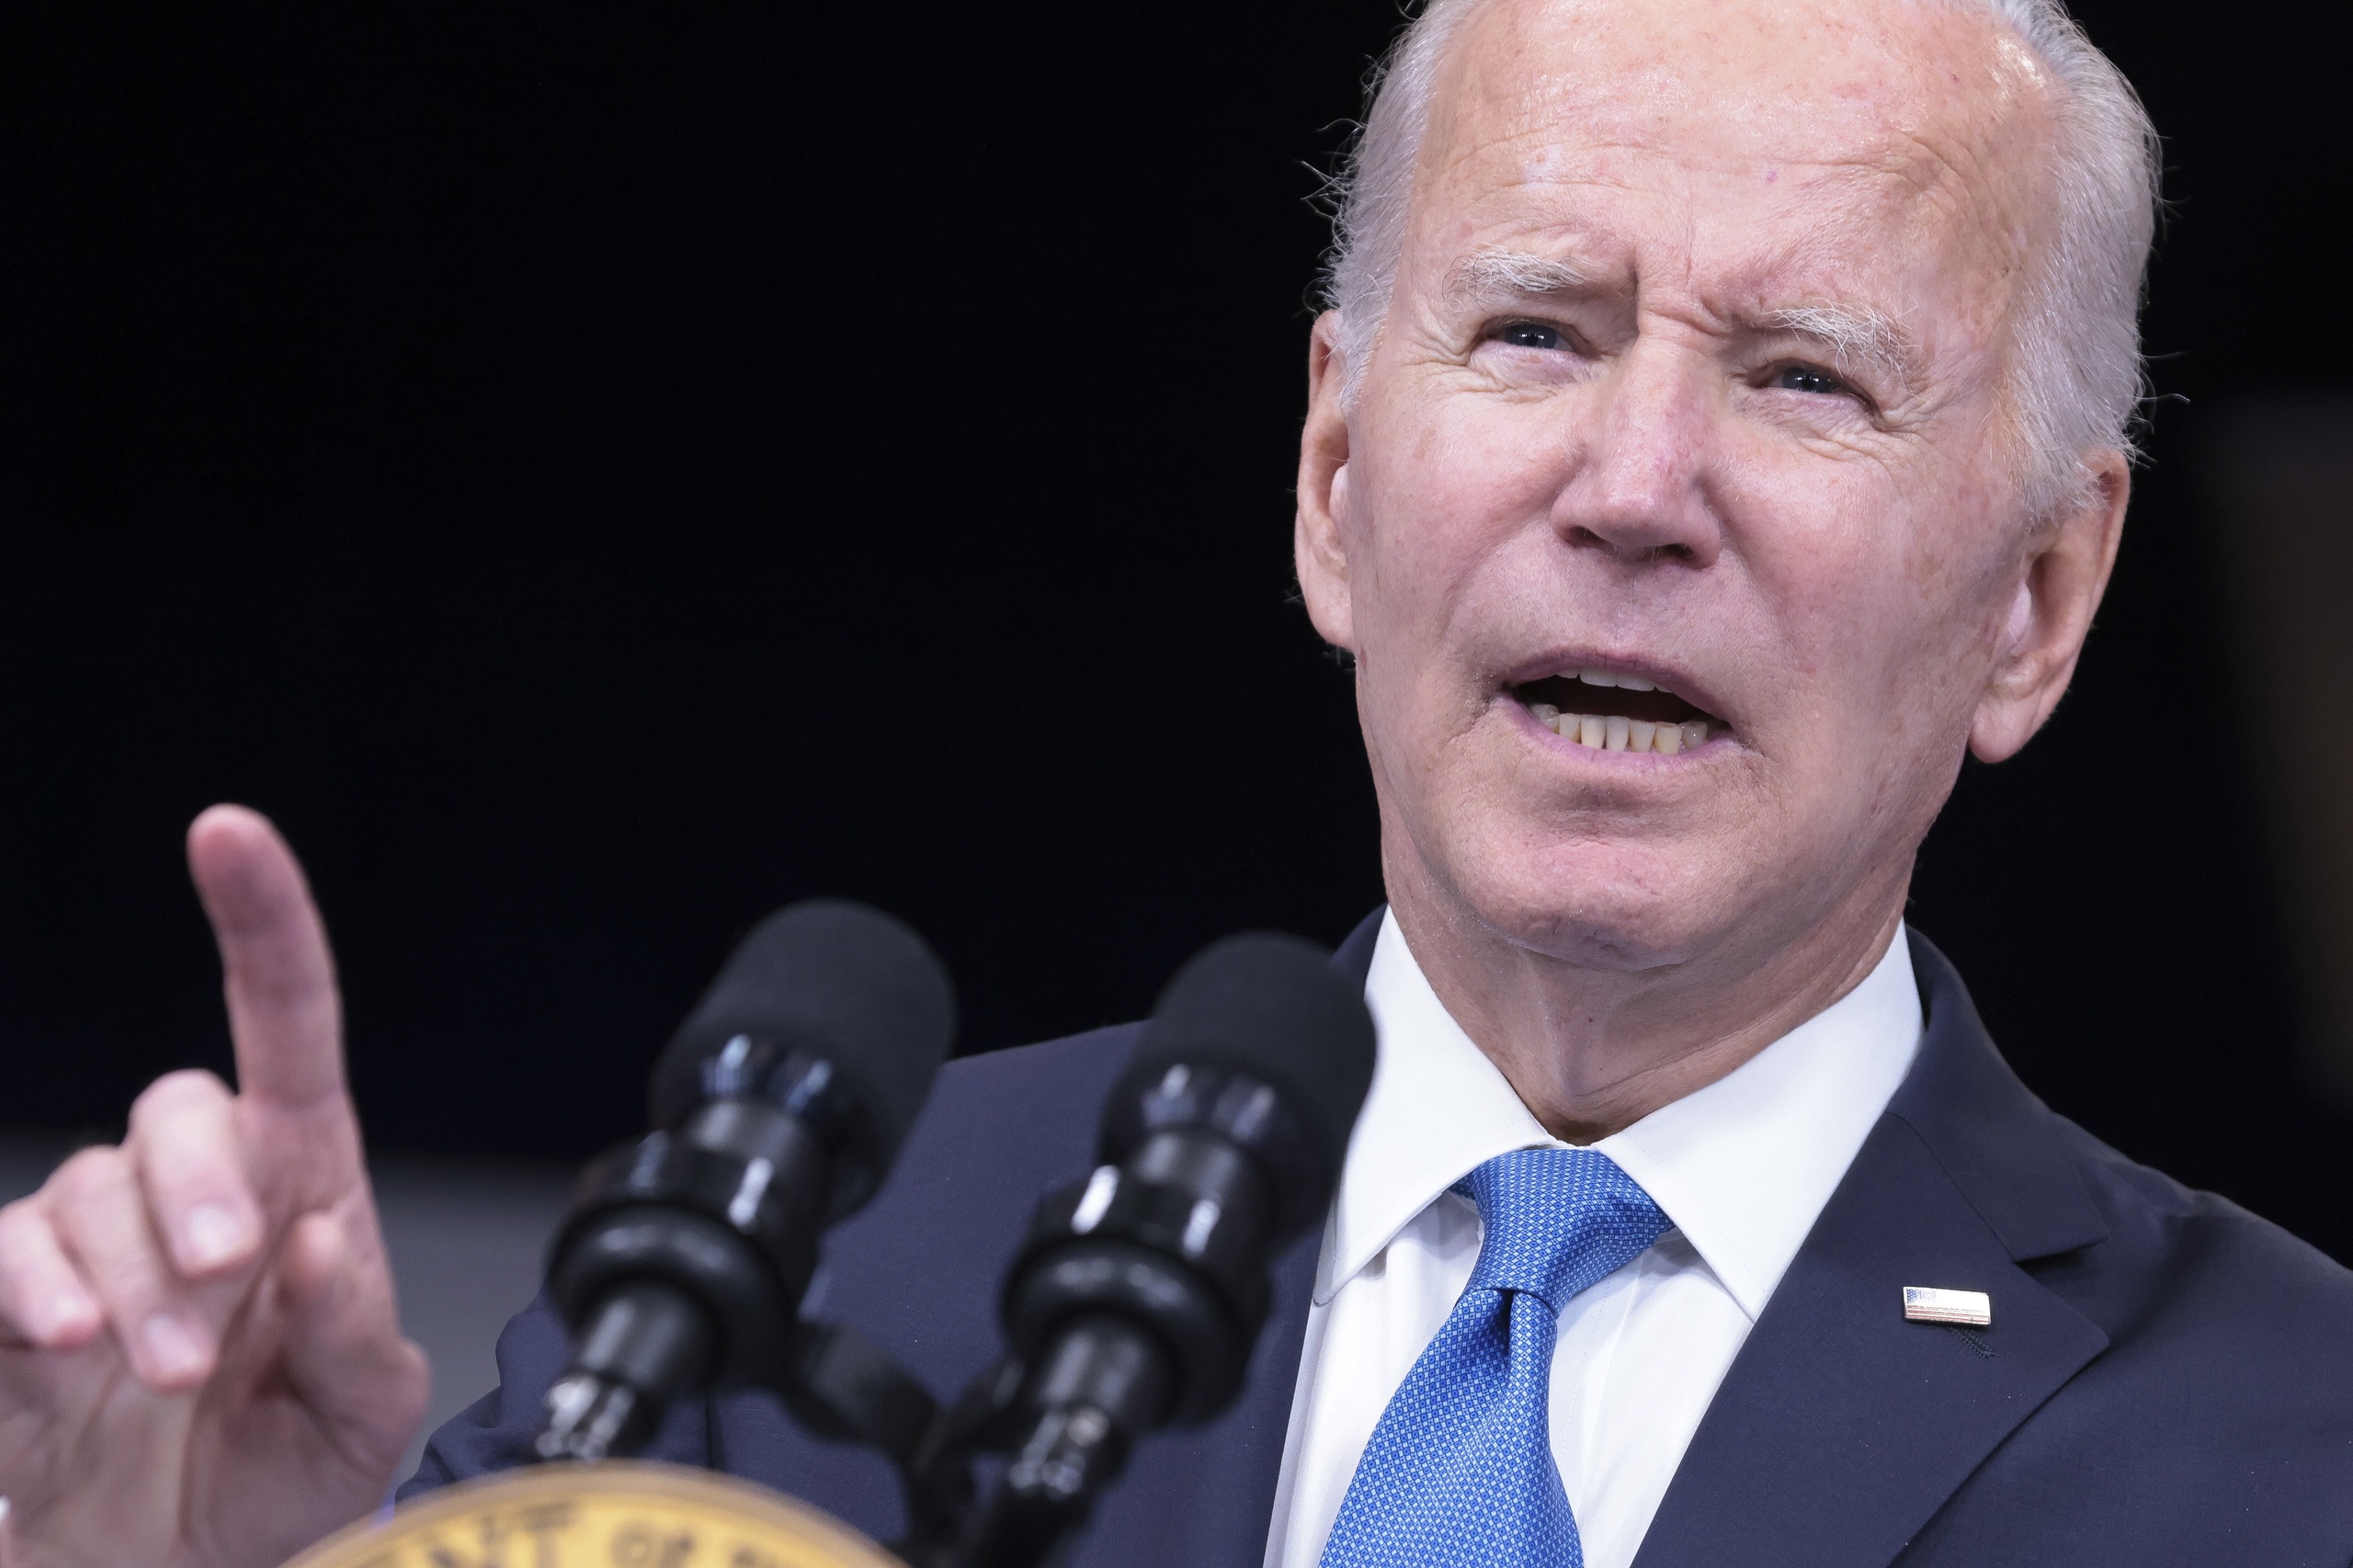 De Amerikaanse president Joe Biden waarschuwt Rusland opnieuw geen kernwapens of een vuile bom met radioactief materiaal te gebruiken in Oekraine. 'Laat me alleen zeggen dat Rusland een ongelooflijk ernstige fout zou maken als het een tactisch kernwapen zou gebruiken', zei Biden in een persbriefing in het Witte Huis. 